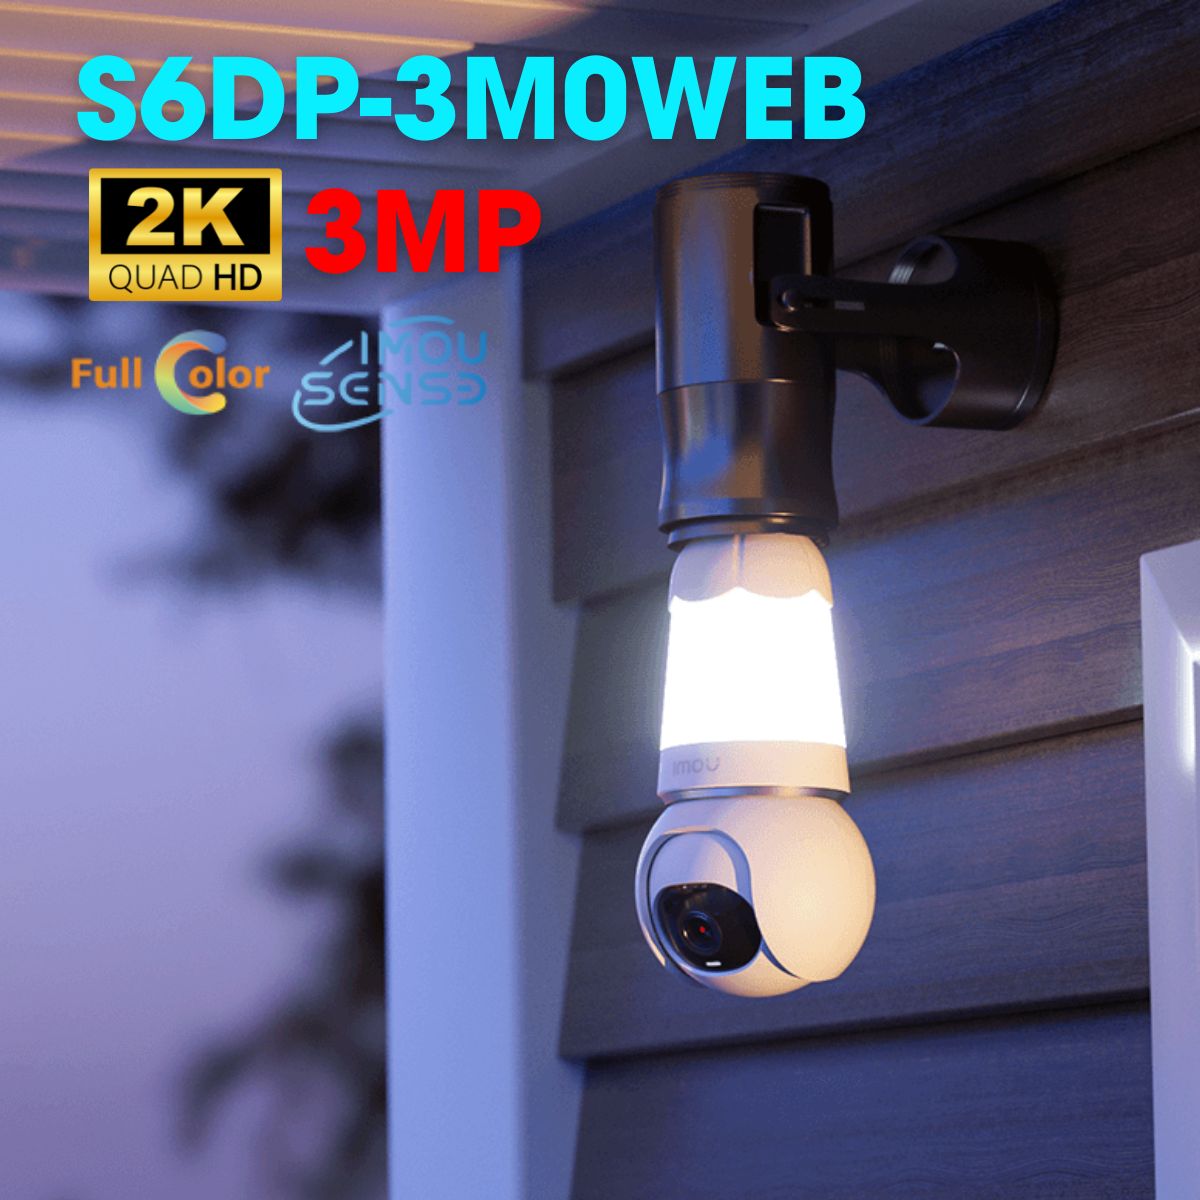 Camera IP wifi bóng đèn IMOU IPC-S6DP-3M0WEB 3Mp 2K, tích hợp mic và loa, phát hiện con người